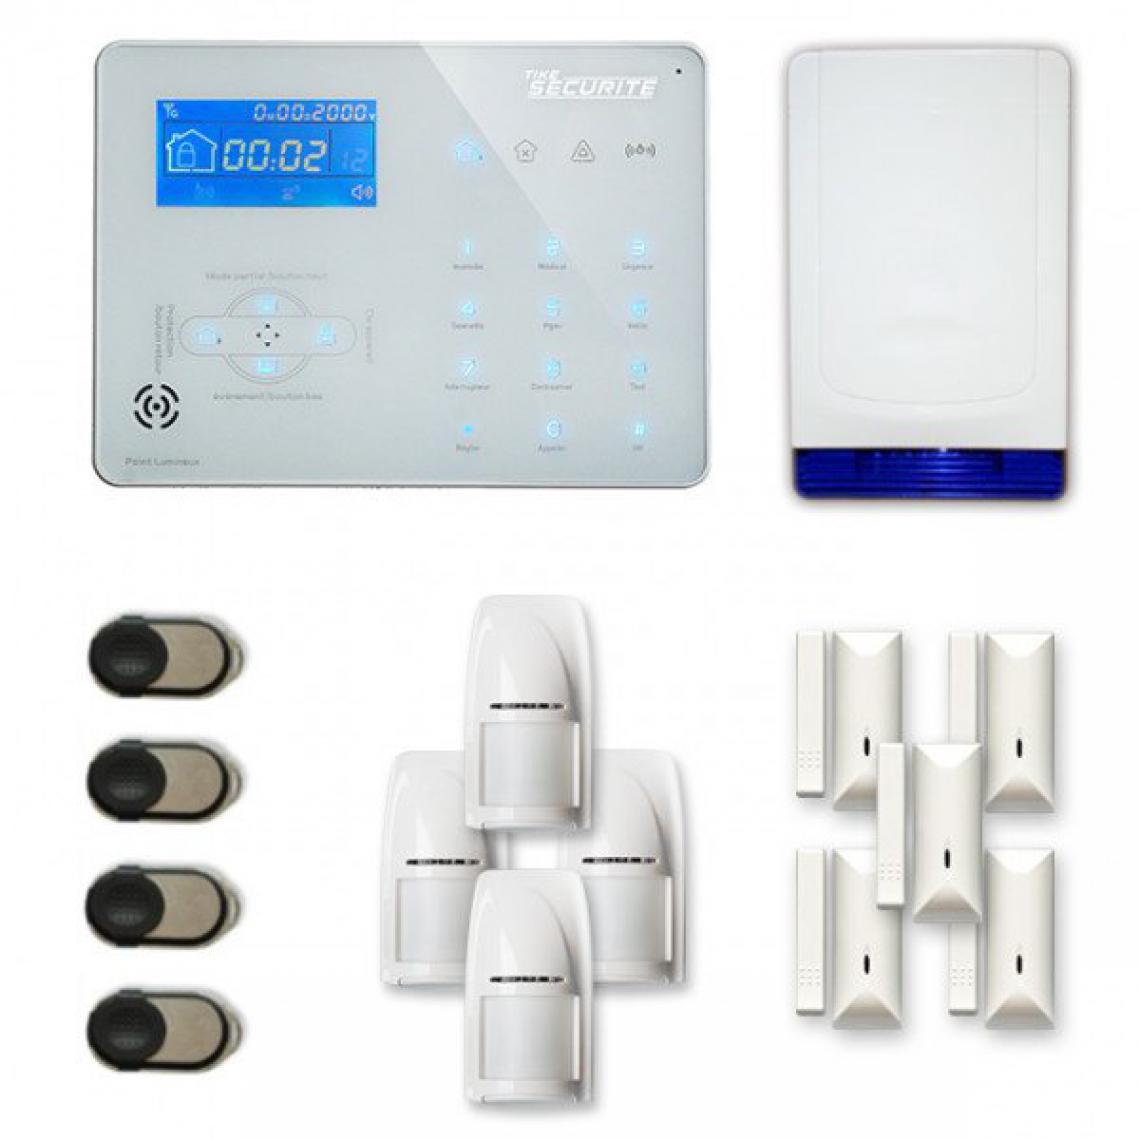 Tike Securite - Alarme maison sans fil ICE-B34 Compatible Box internet et GSM - Alarme connectée